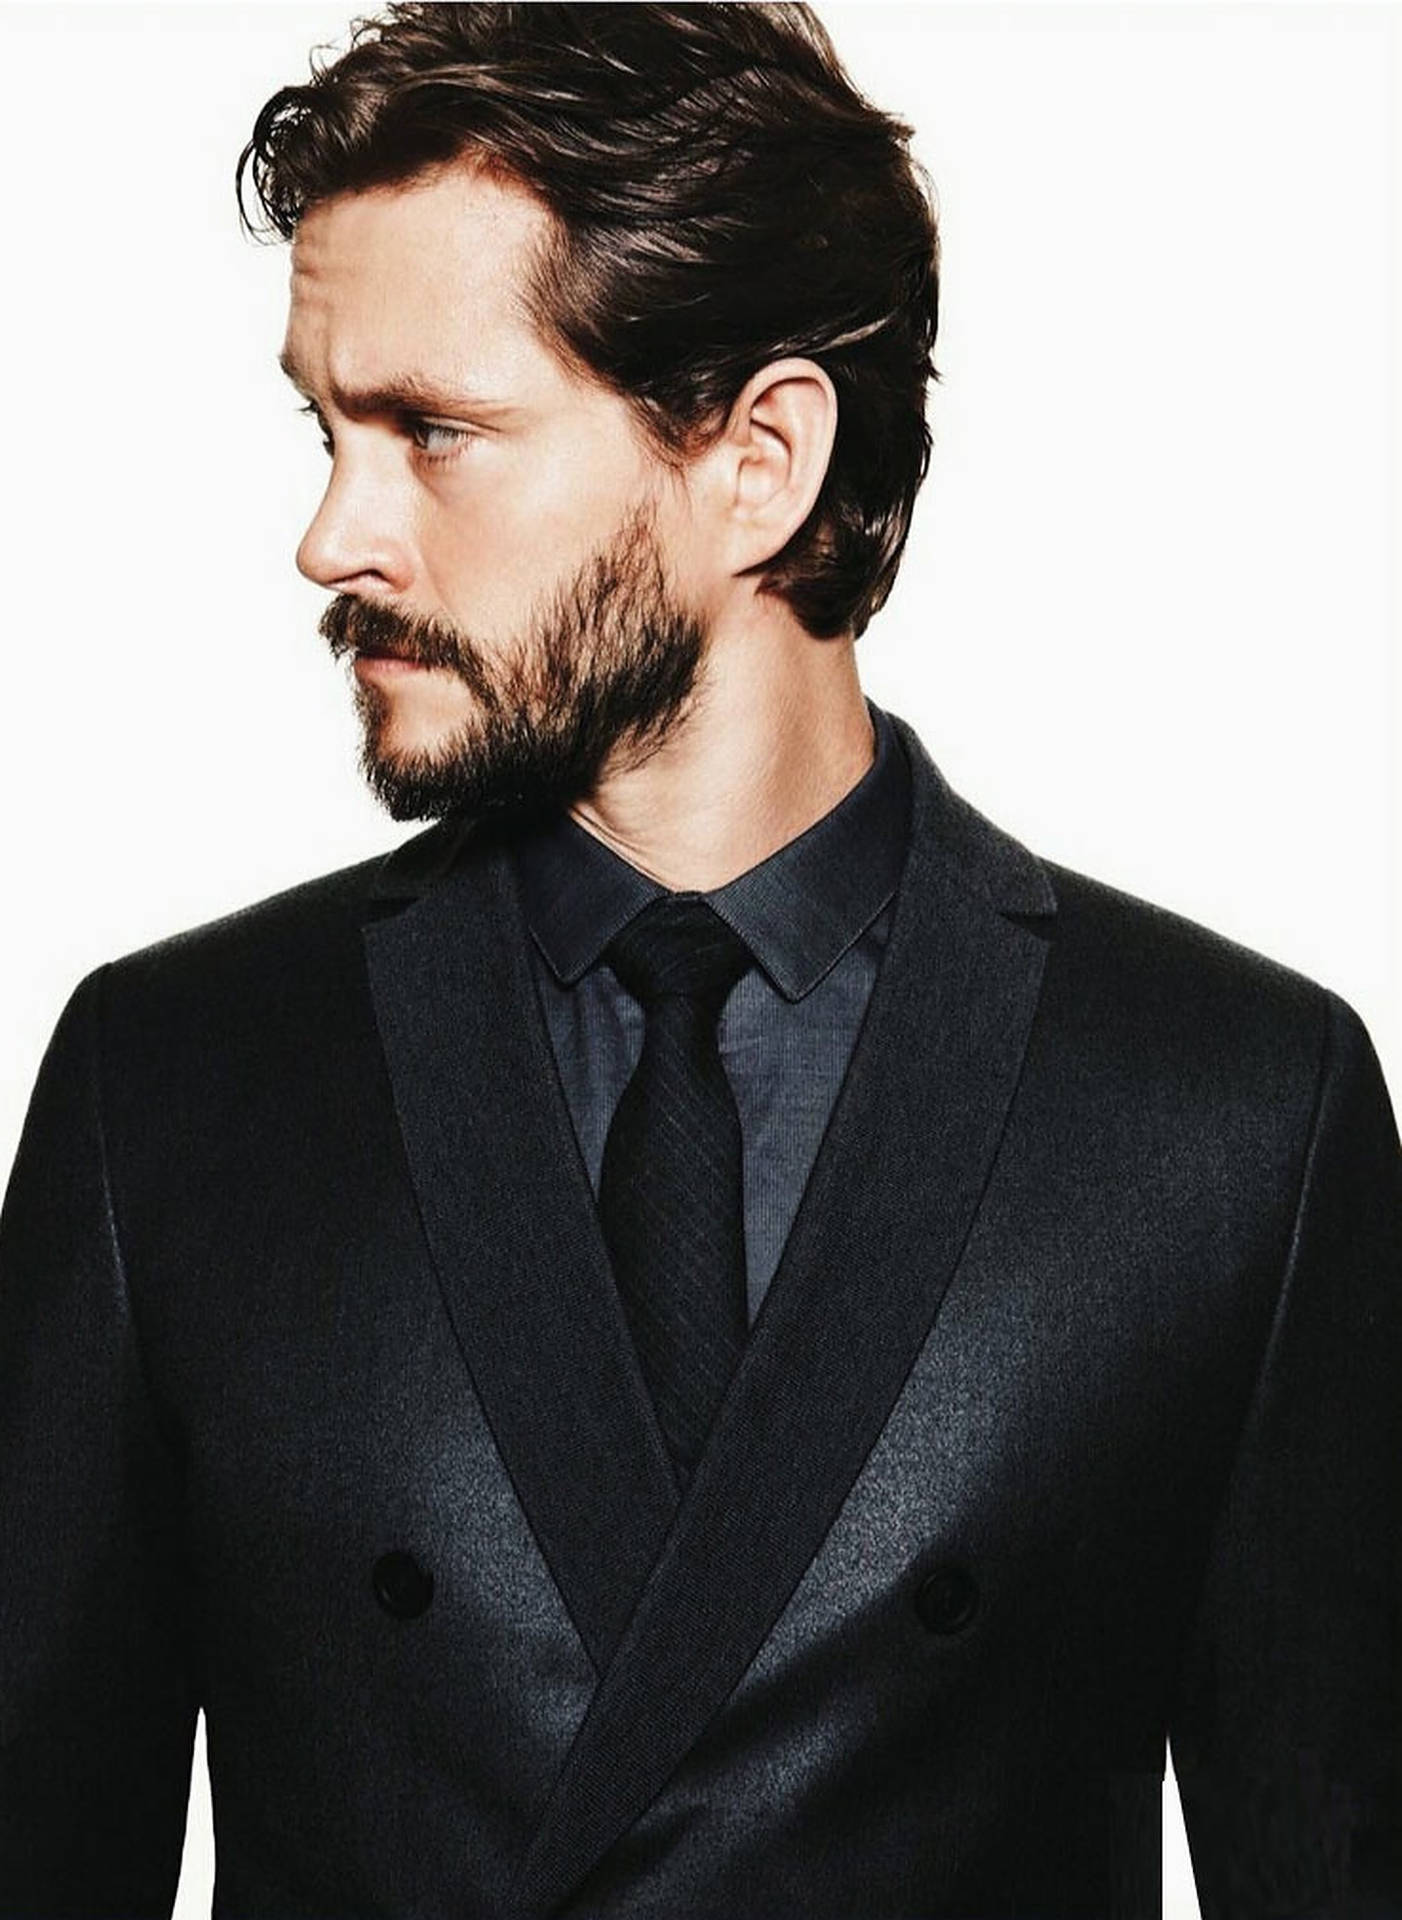 Hugh Dancy In Black Suit Wallpaper